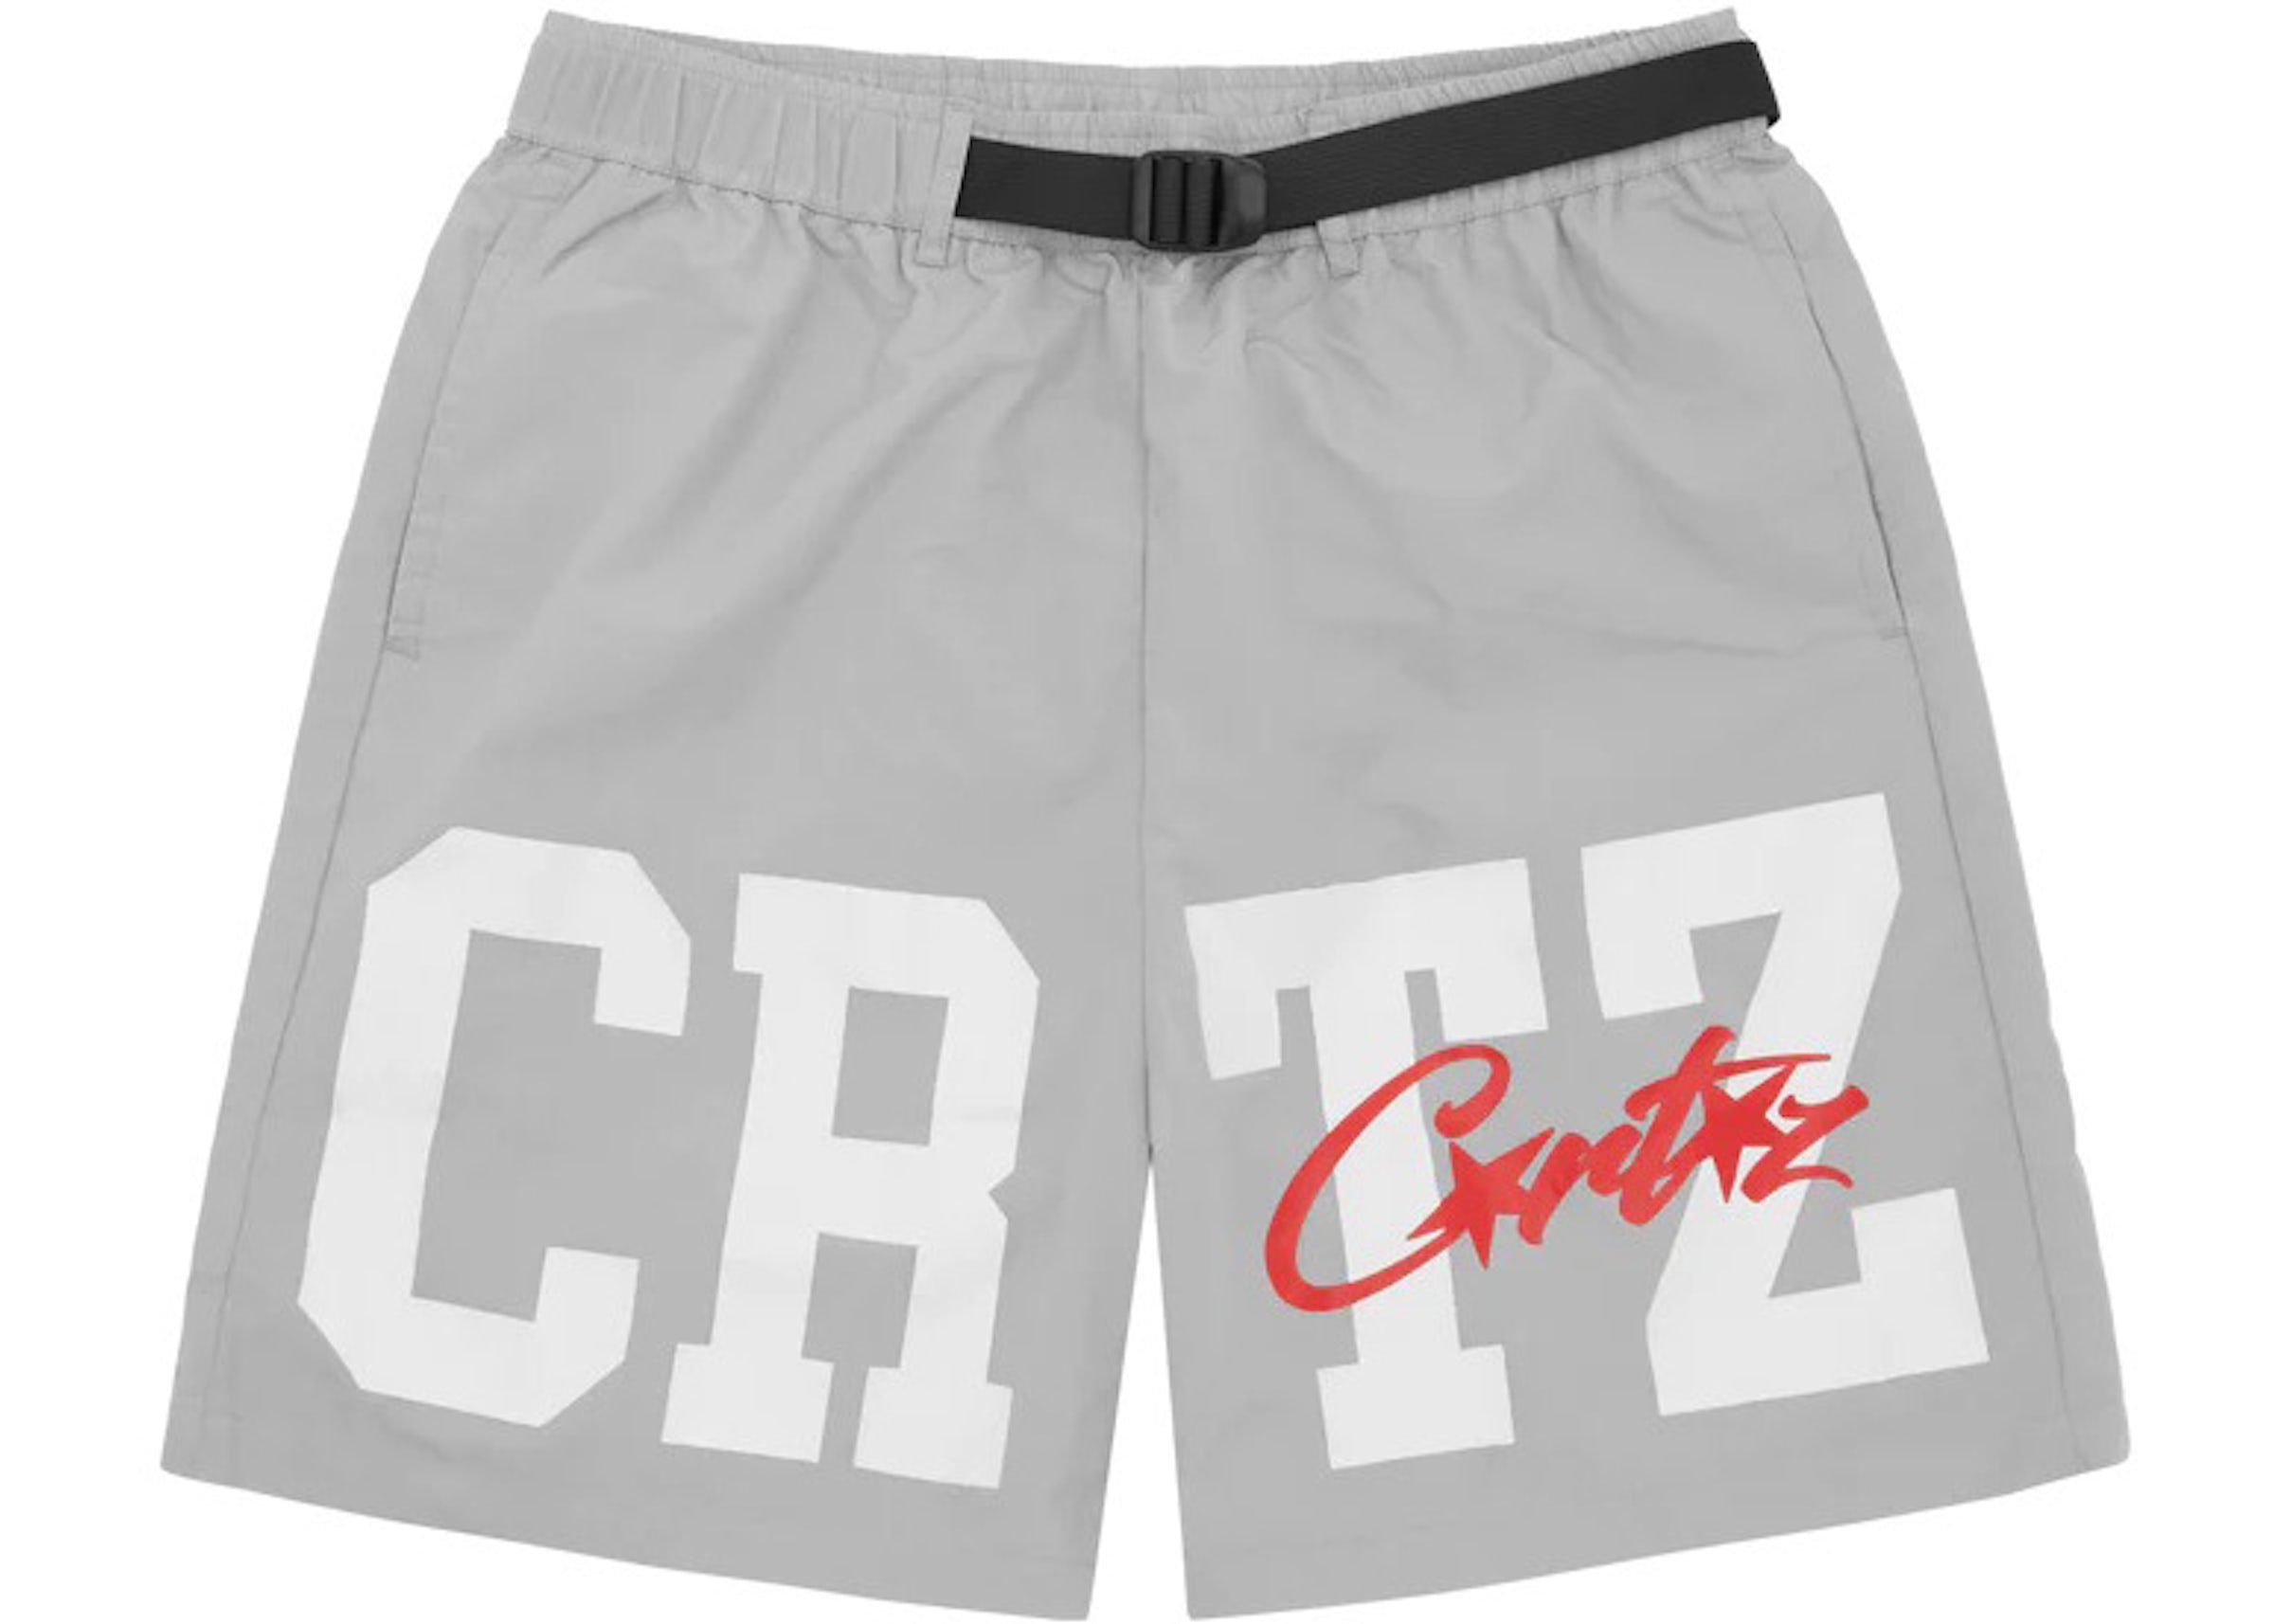 Corteiz CRTZ Nylon Shorts Grey